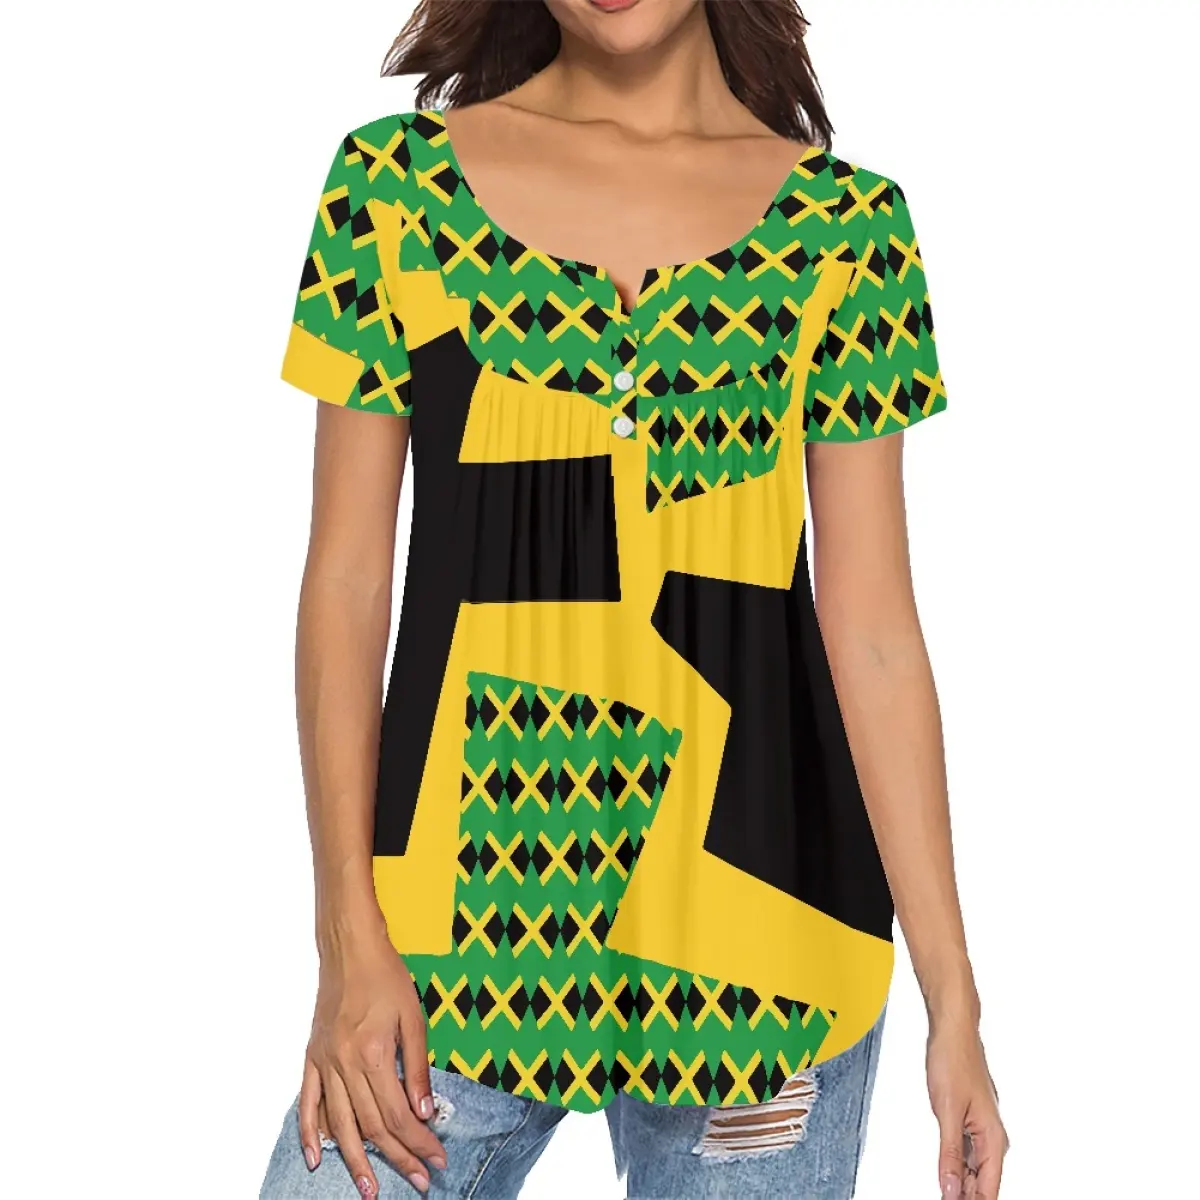 Personalizzato giamaica abbigliamento camicette e camicie da donna di alta qualità all'ingrosso giamaica Flag Design camicie da donna camicette e top